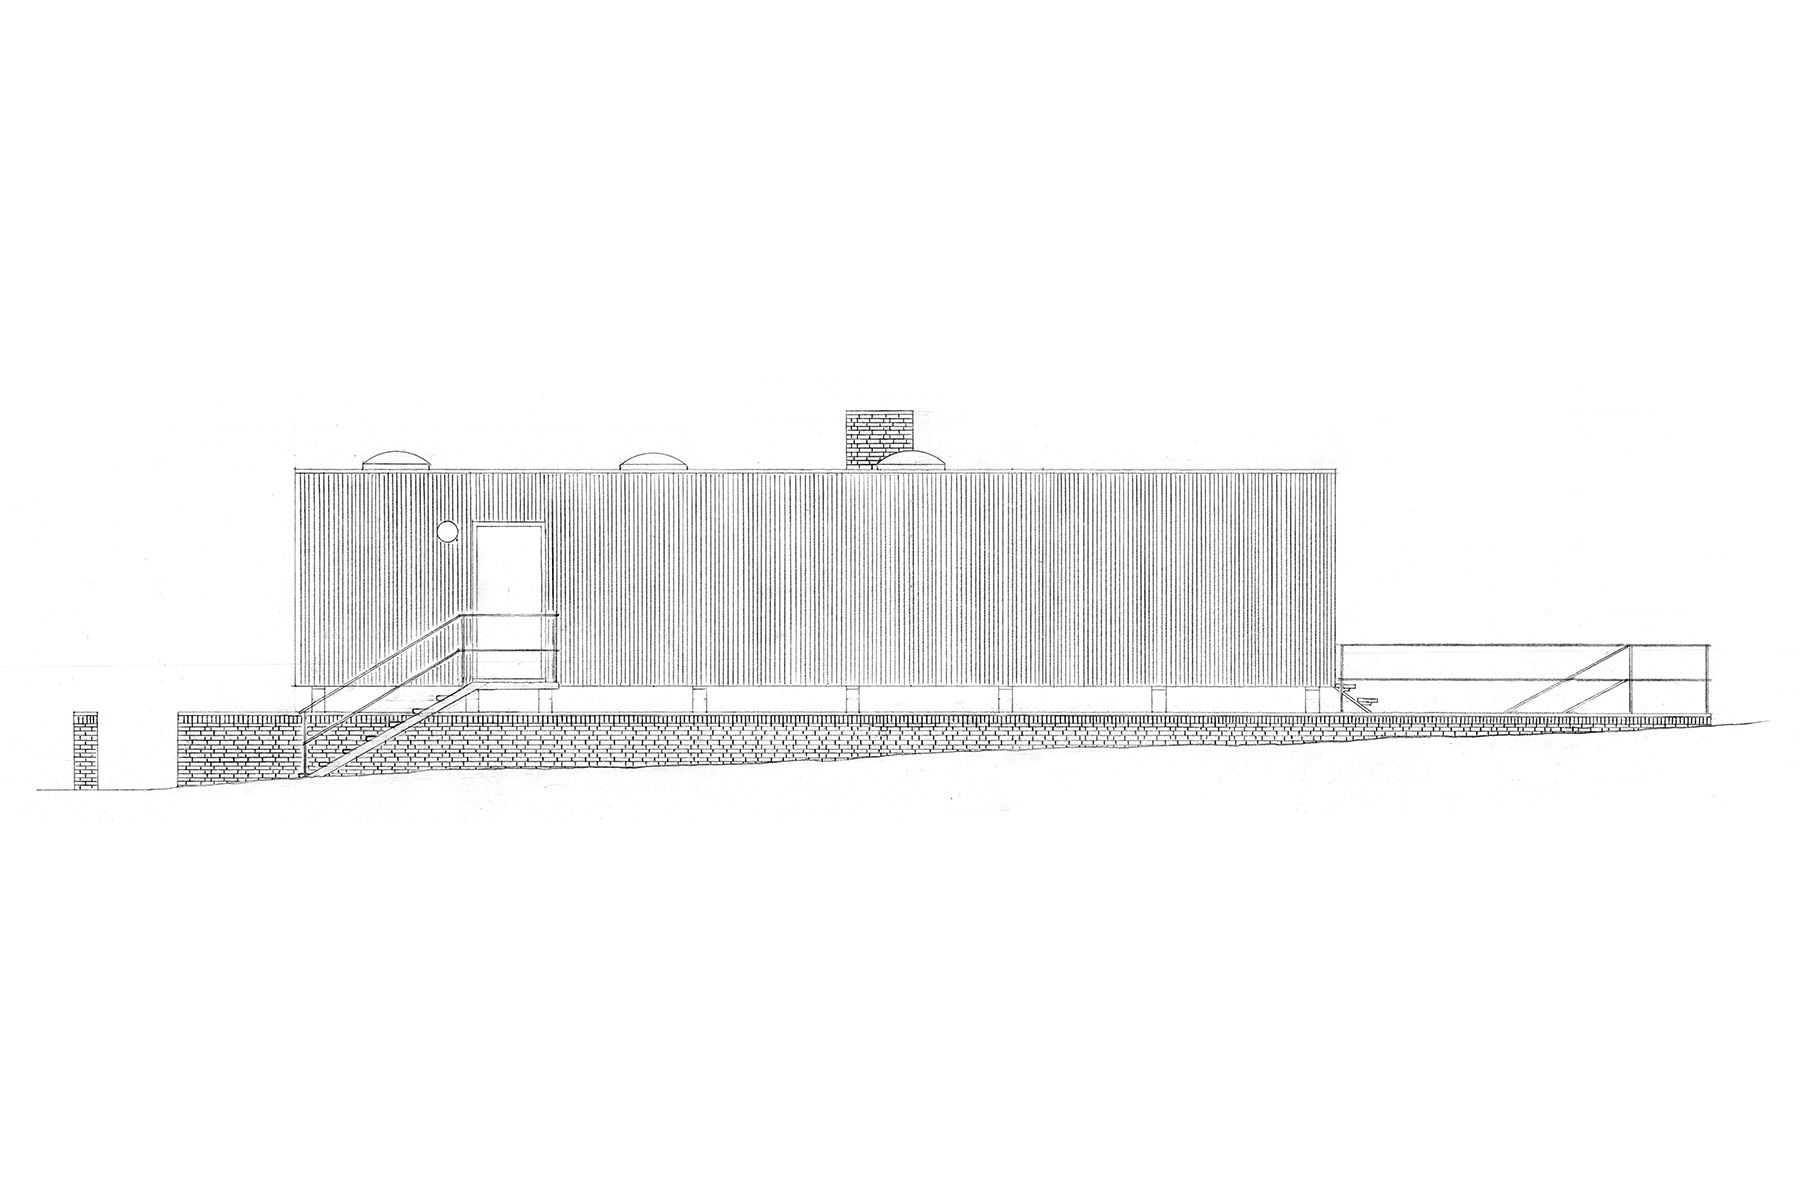 skoleprojekt skole projekt arkitekt arkitektskole aarhus studie analyse siesbys hus arne jacobsen dansk modernisme mursten beton træ